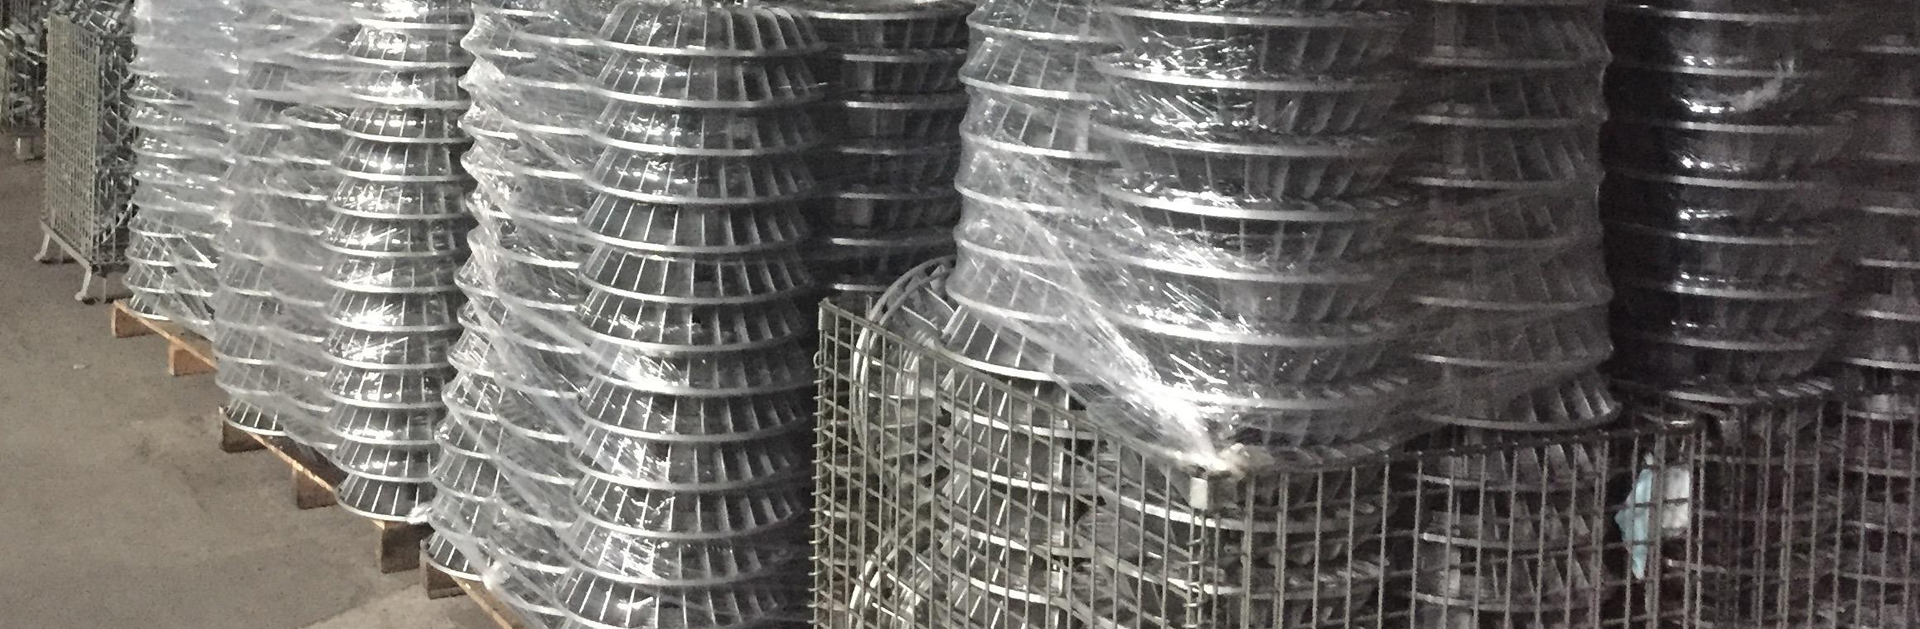 Pengilang Pemutus Heatsink Aluminium - Pendingin Panas Custom